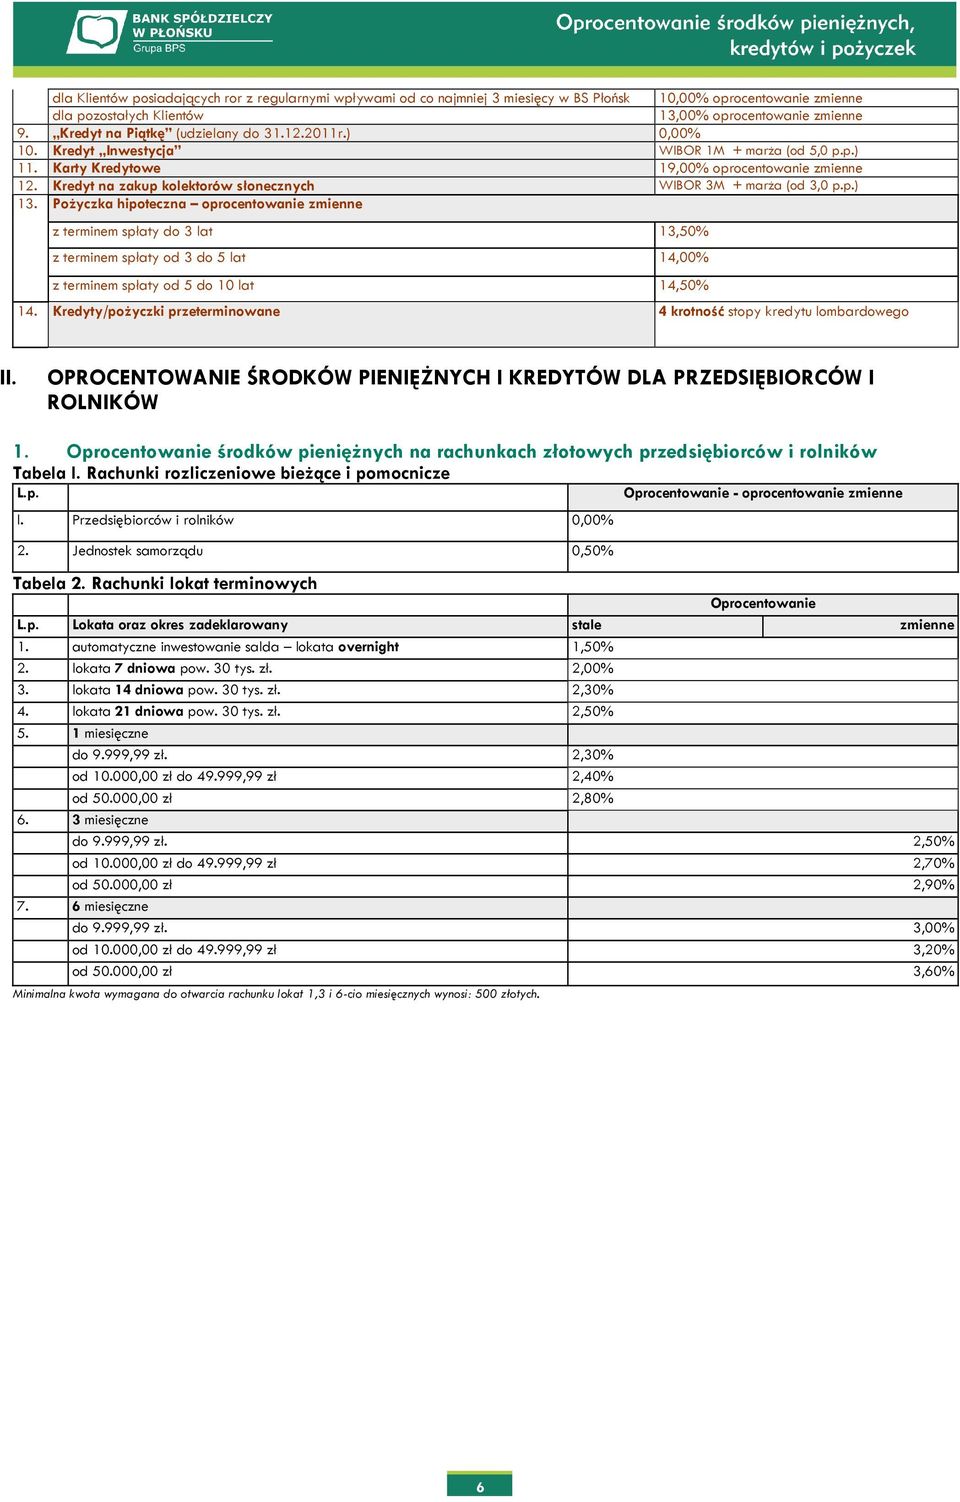 Kredyt na zakup kolektorów słonecznych WIBOR 3M + marża (od 3,0 p.p.) 13.